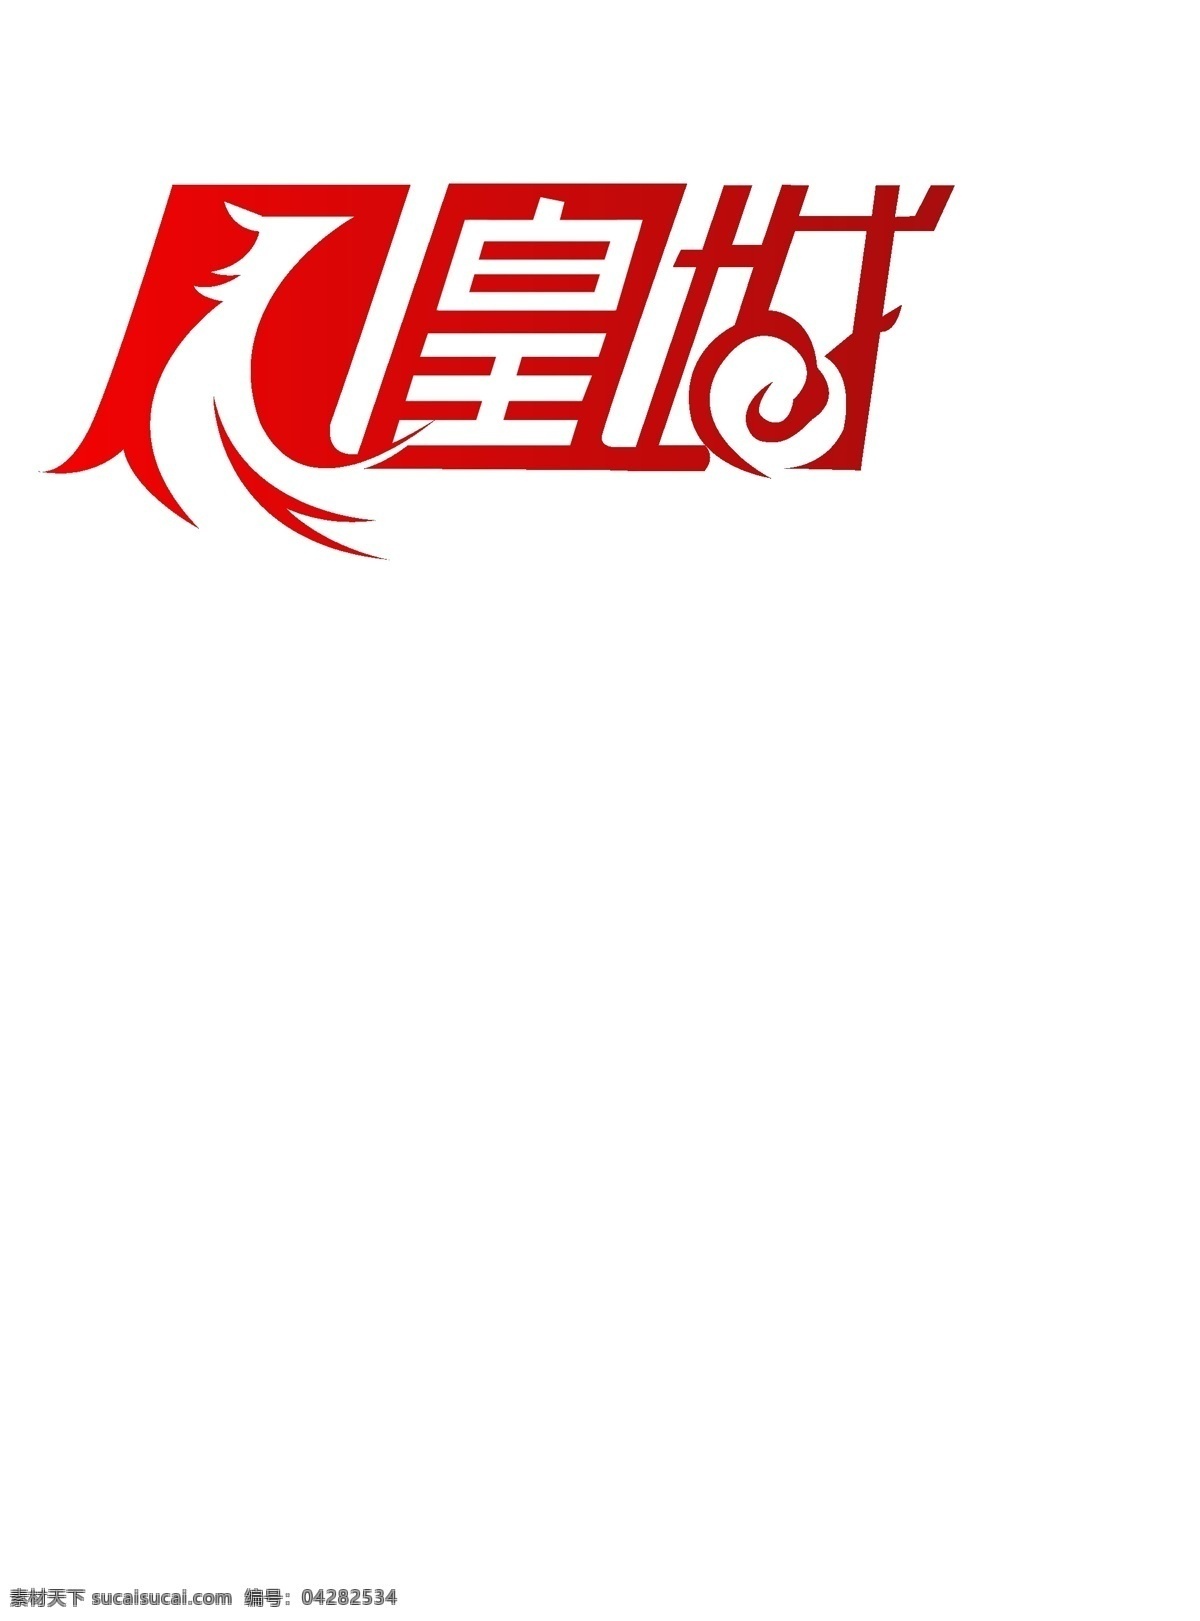 凤凰 城 字体 变形 凤凰城 字体变形 红色调 高清 源文件 白色